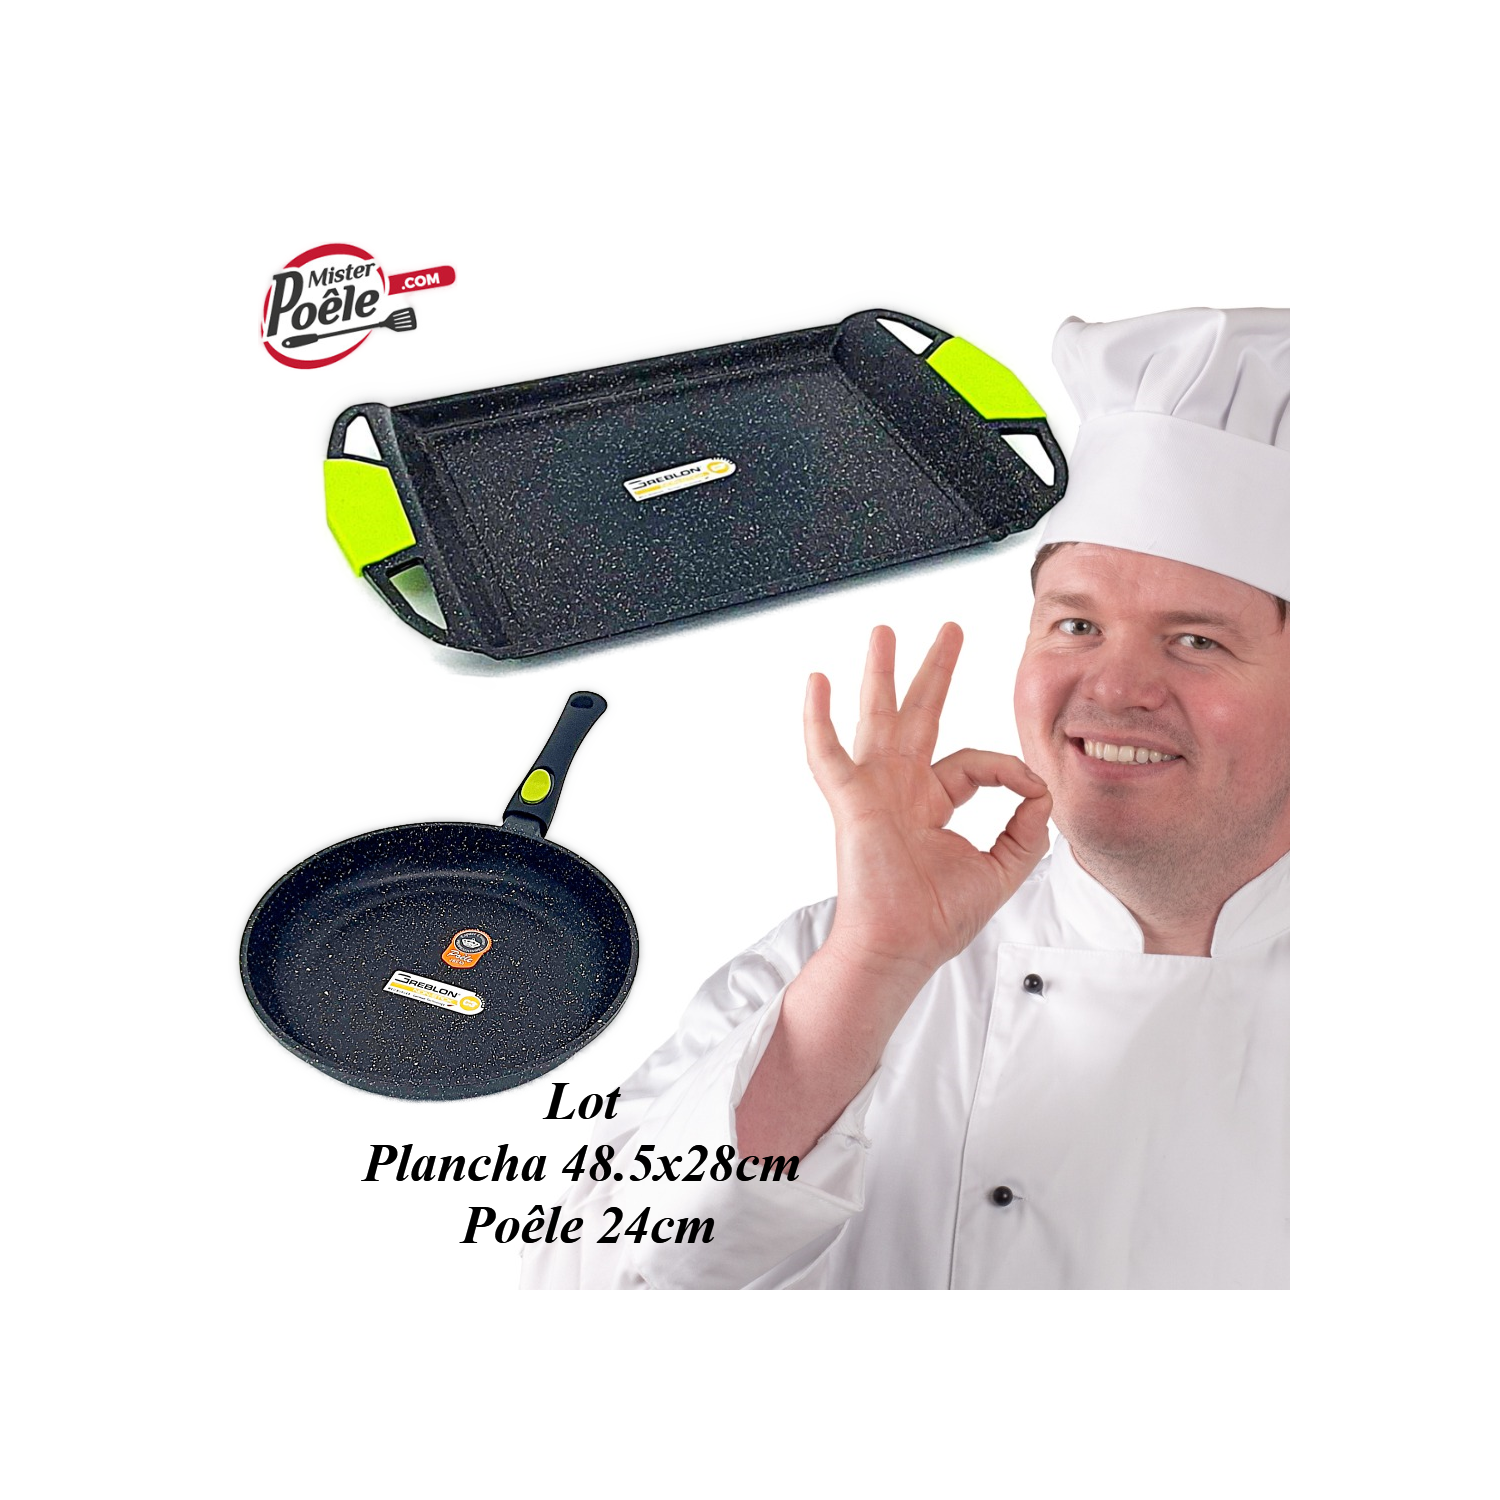 Lot: Poêle 24cm / Plancha 48.5cmx28cm Espace Cuisine Professionnel